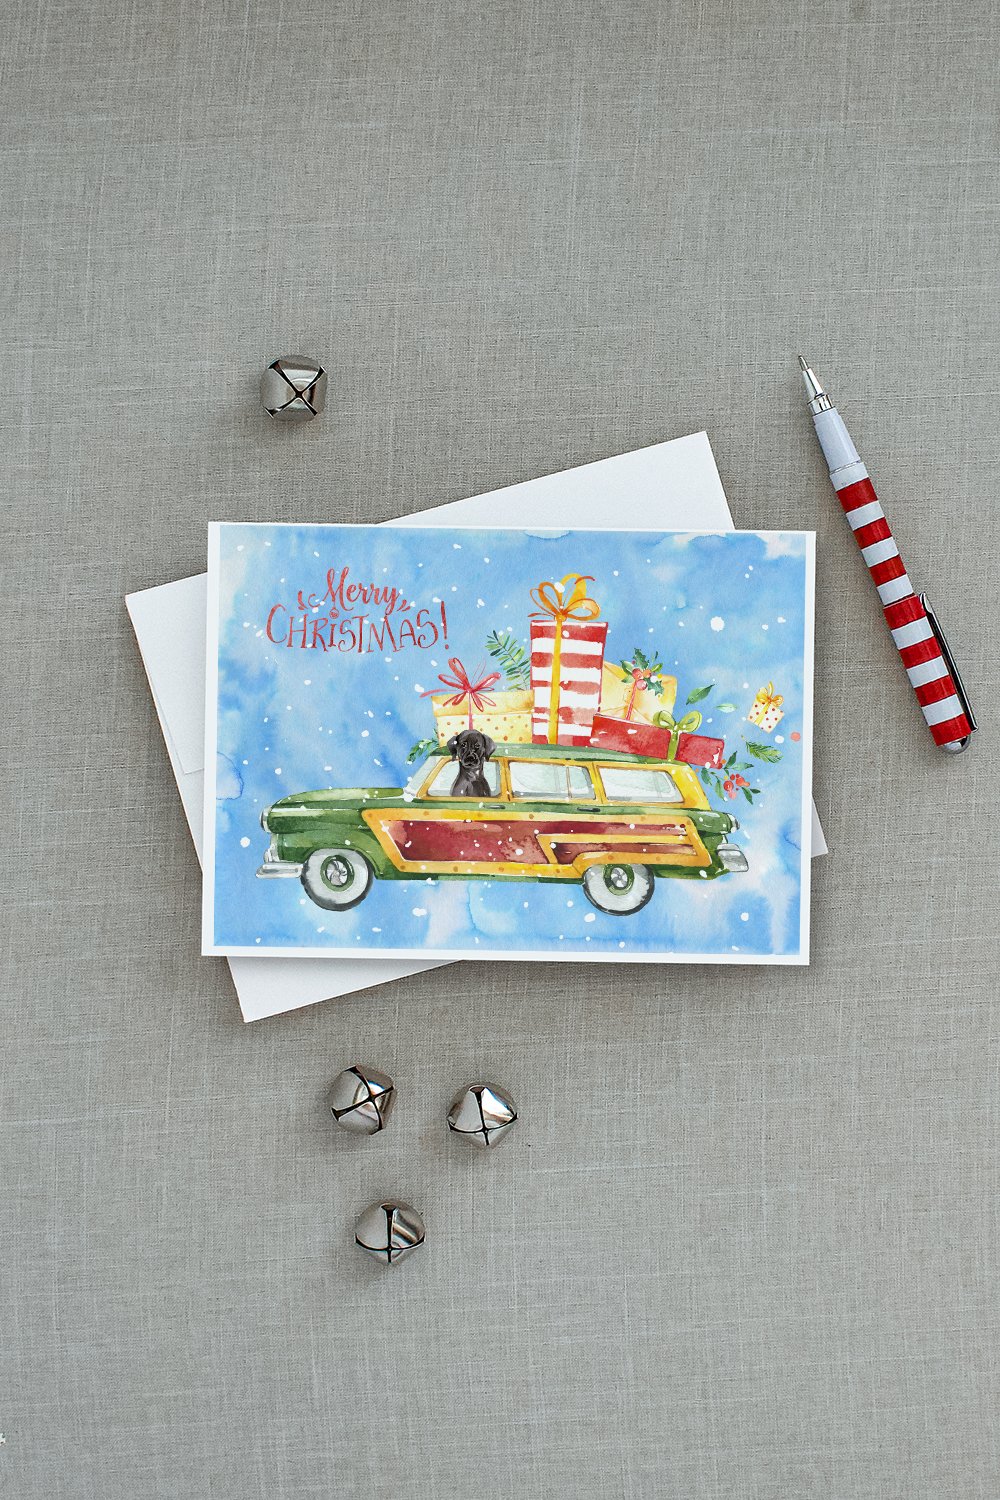 Merry Christmas Black Labrador Retriever Greeting Cards and Envelopes Pack of 8 - the-store.com